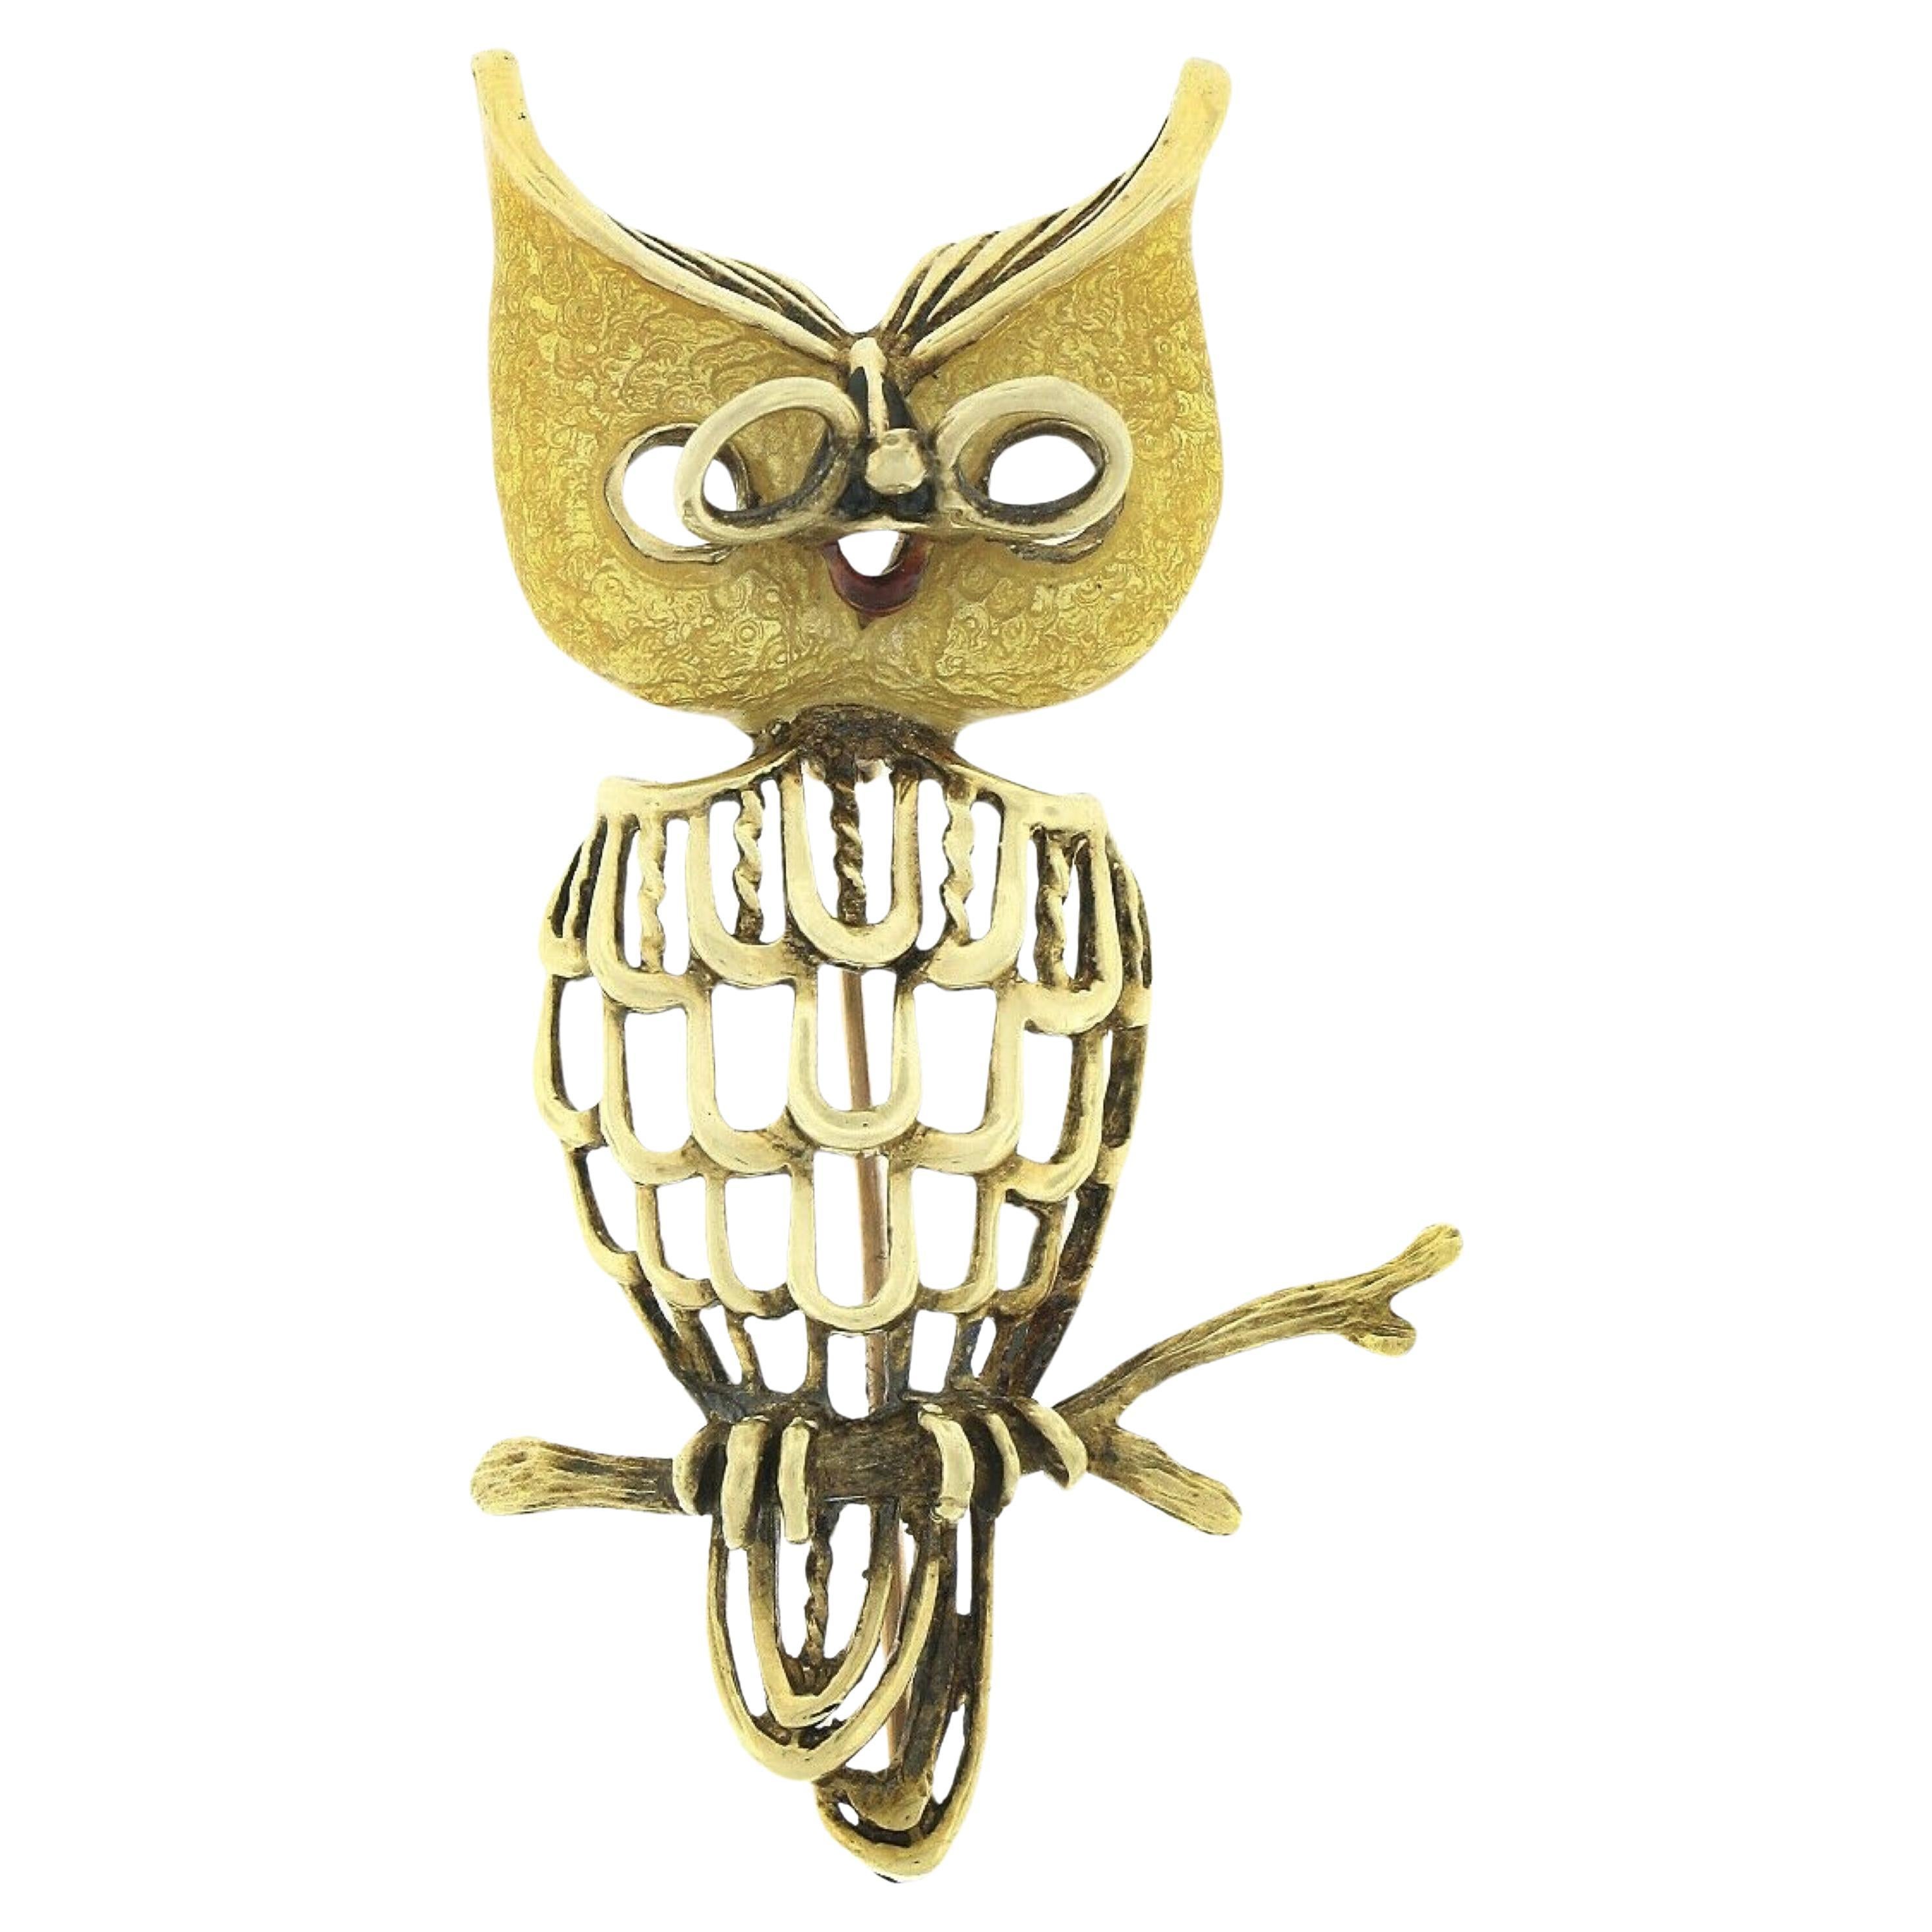 Detaillierte strukturierte 18k Gold Gelb Emaille Wise Owl auf Zweig Anstecknadel Brosche